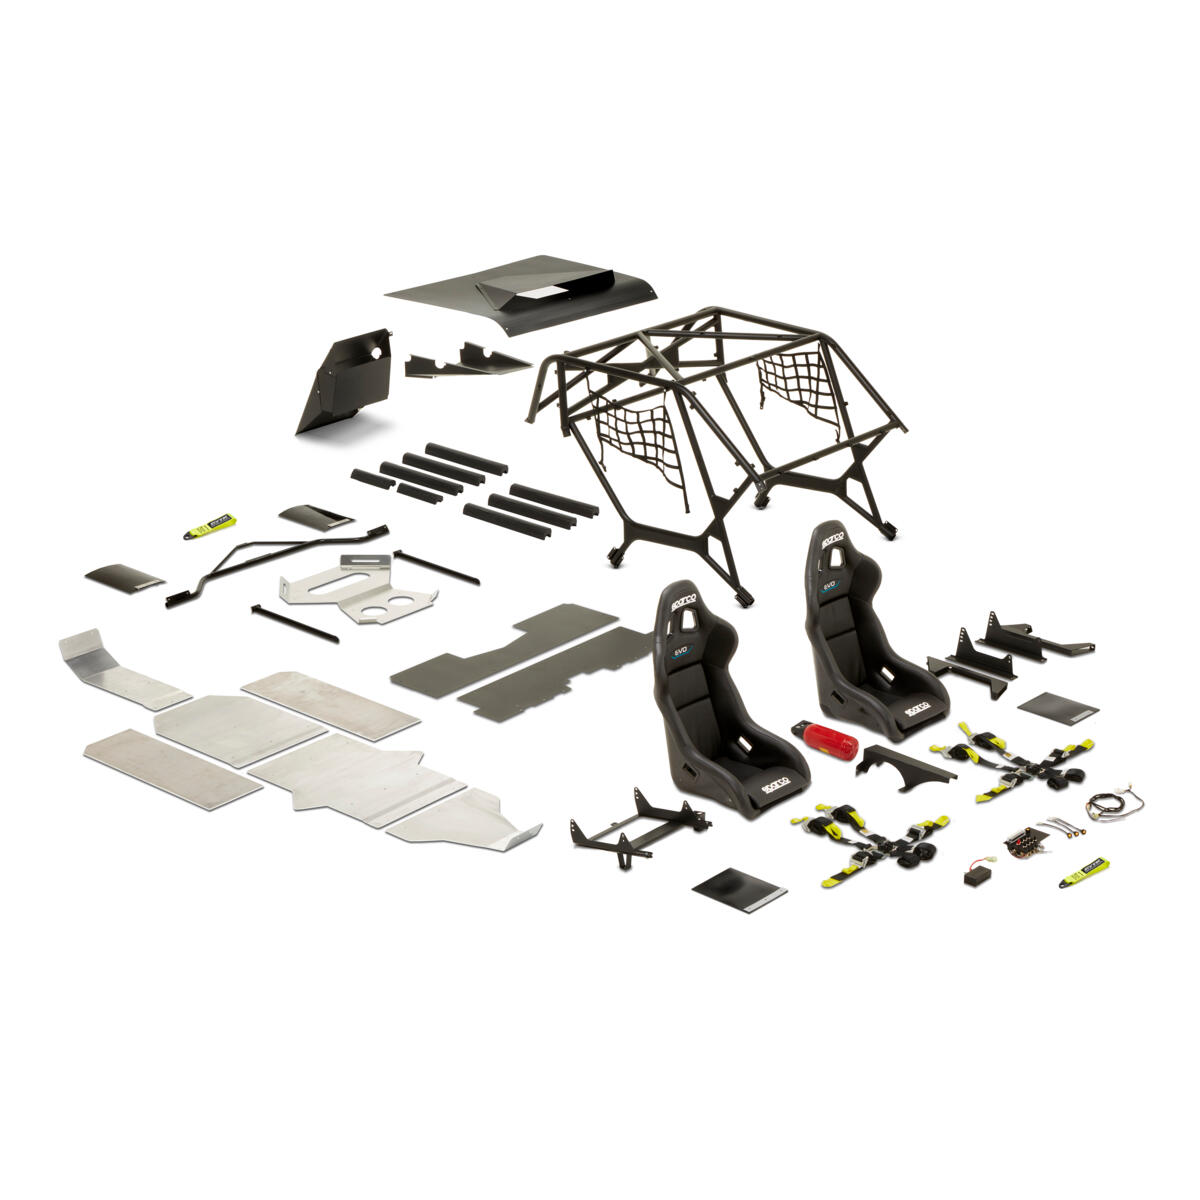 De GYTR® Stage 1-racingkit (modeljaar 2019 tot heden) bevat alle verplichte apparatuur op basis van de T4-voorschriften van de FIA (Fédération Internationale de l'Automobile) voor Side-by-Sides. Uitgerust met deze kit is de YXZ1000R klaar om deel te nemen aan de meeste competities van de National Sports Authorities en FIM.
Dankzij het plug-and-play ontwerp hoef je niet te lassen of het chassis aan te passen. Samen met de volledige montage-instructies kan elke Yamaha SSV-dealer of ervaren monteur de kit in ongeveer 16 uur monteren.
Met de GYTR-racingkit gaat er een nieuwe wereld van rallyraces voor je open en beschik je over een sterke basis om je vaardigheden en voertuigprestaties verder te verbeteren, voor beginnende en ervaren coureurs.
Deze Stage 1-kit is ontwikkeld voor modellen met een achteraan gemonteerde radiator en is geschikt voor YXZ1000R-modellen vanaf modeljaar 2019.

De kit bevat: